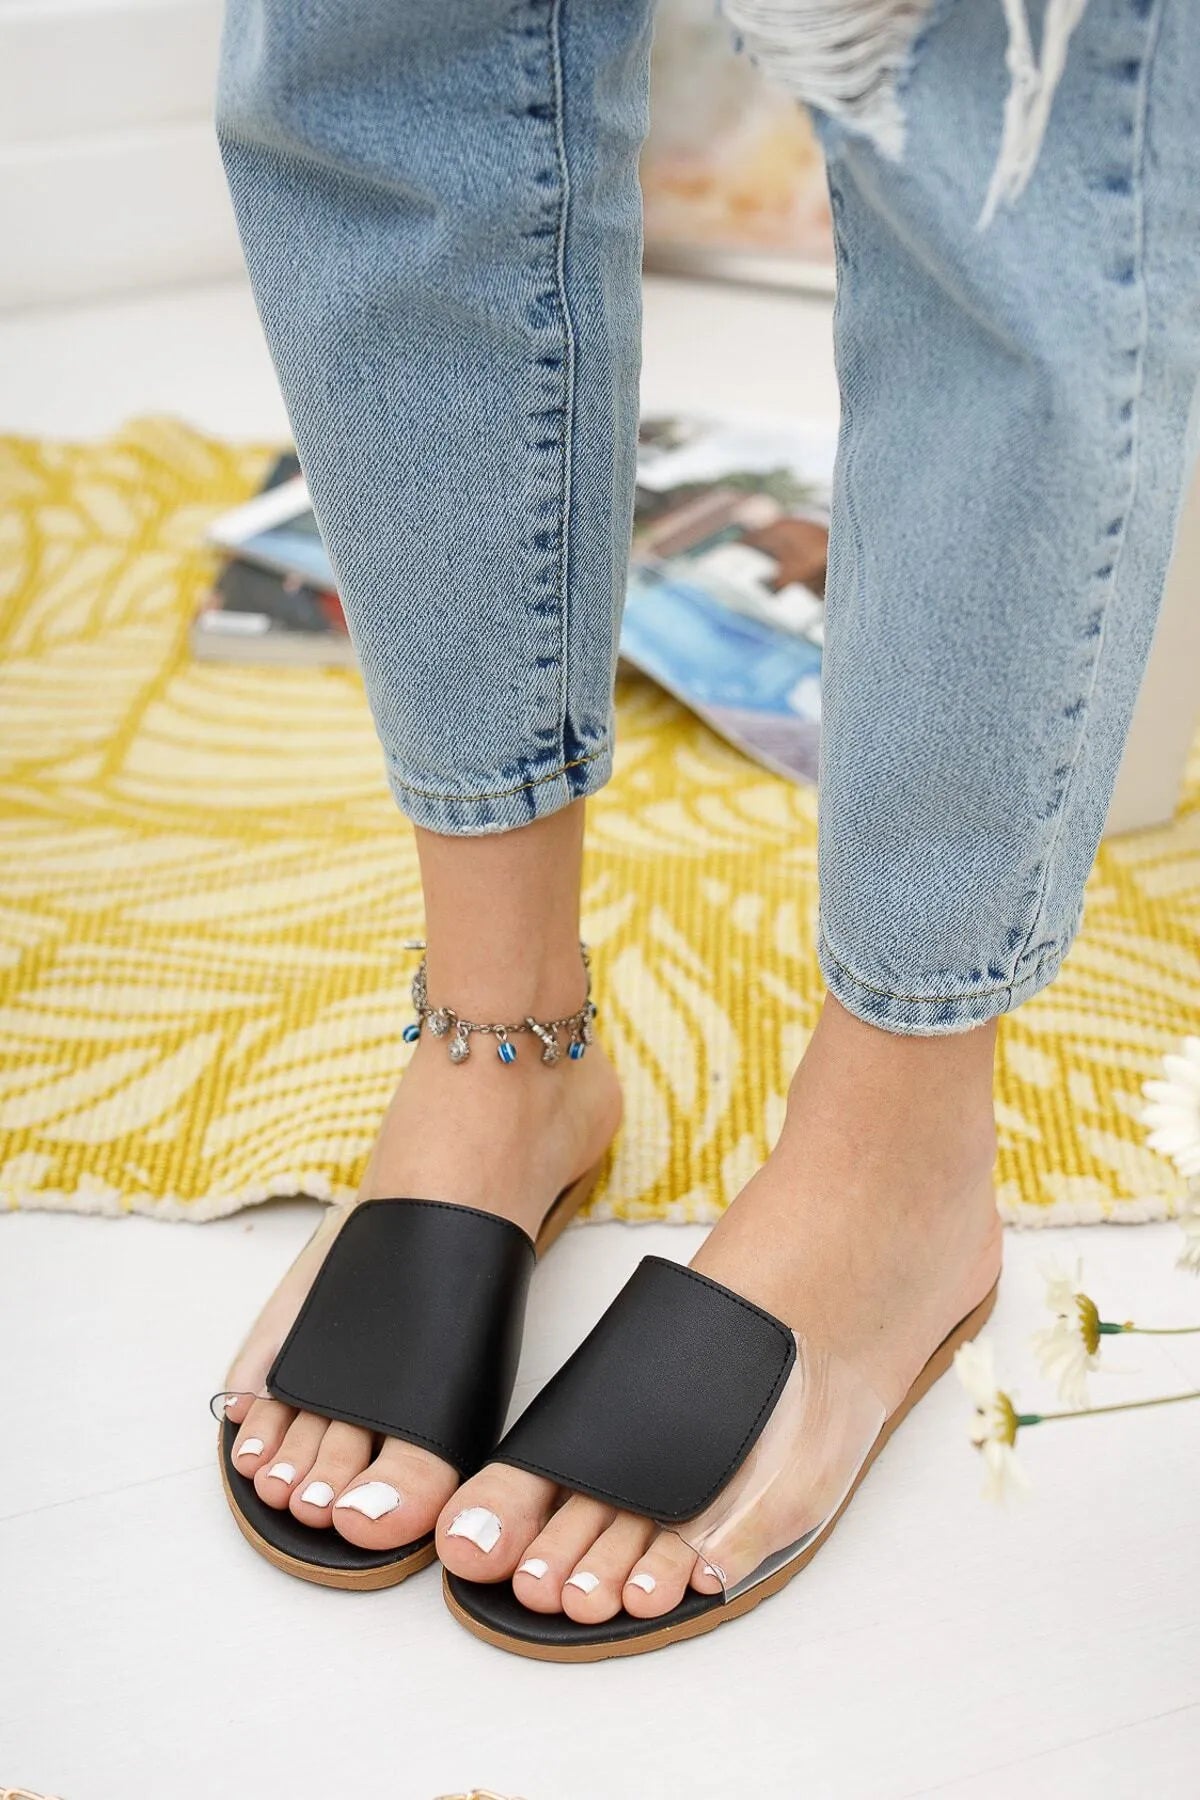 Modafırsat Women's Transparent Slippers